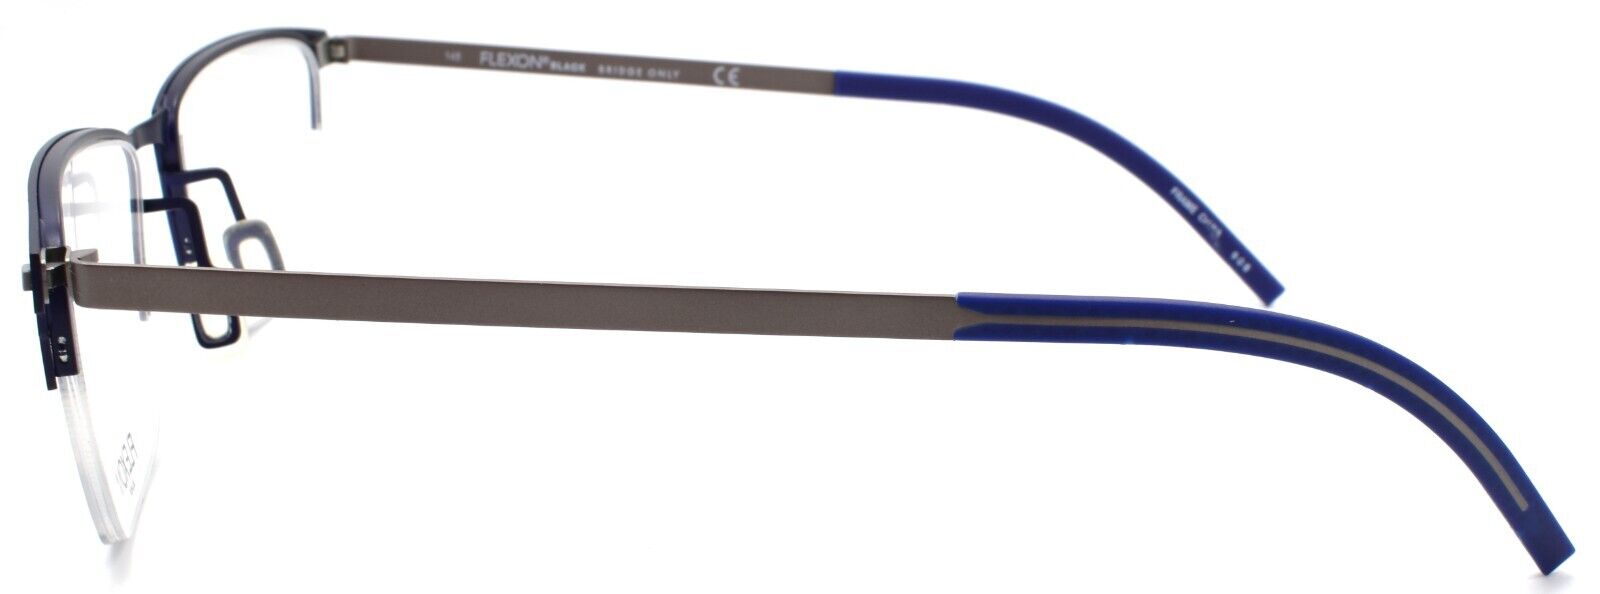 3-Flexon B2030 412 Men's Eyeglasses Navy Half-rim 54-18-145 Flexible Titanium-883900204583-IKSpecs